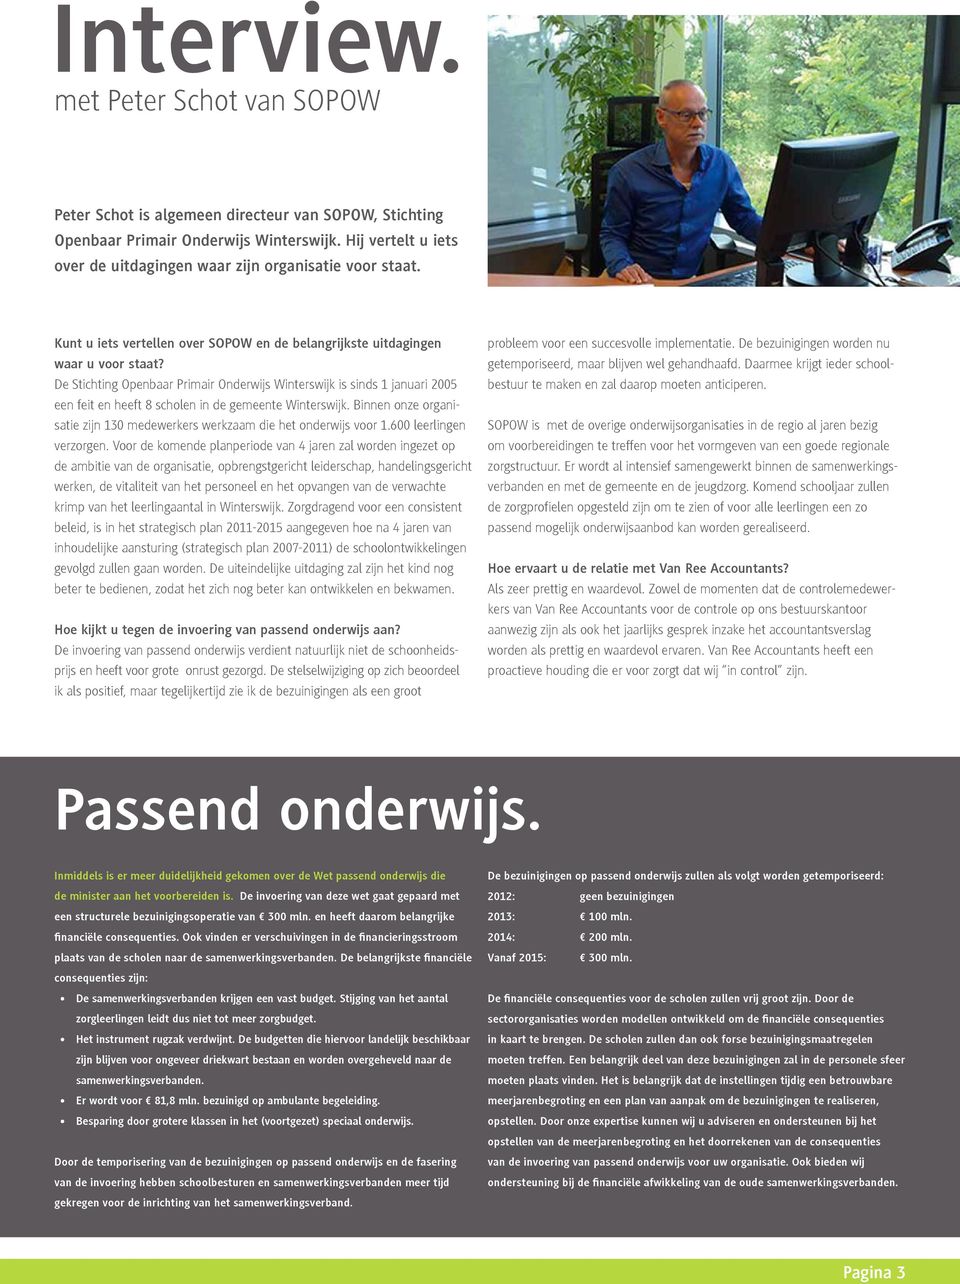 De Stichting Openbaar Primair Onderwijs Winterswijk is sinds 1 januari 2005 een feit en heeft 8 scholen in de gemeente Winterswijk.